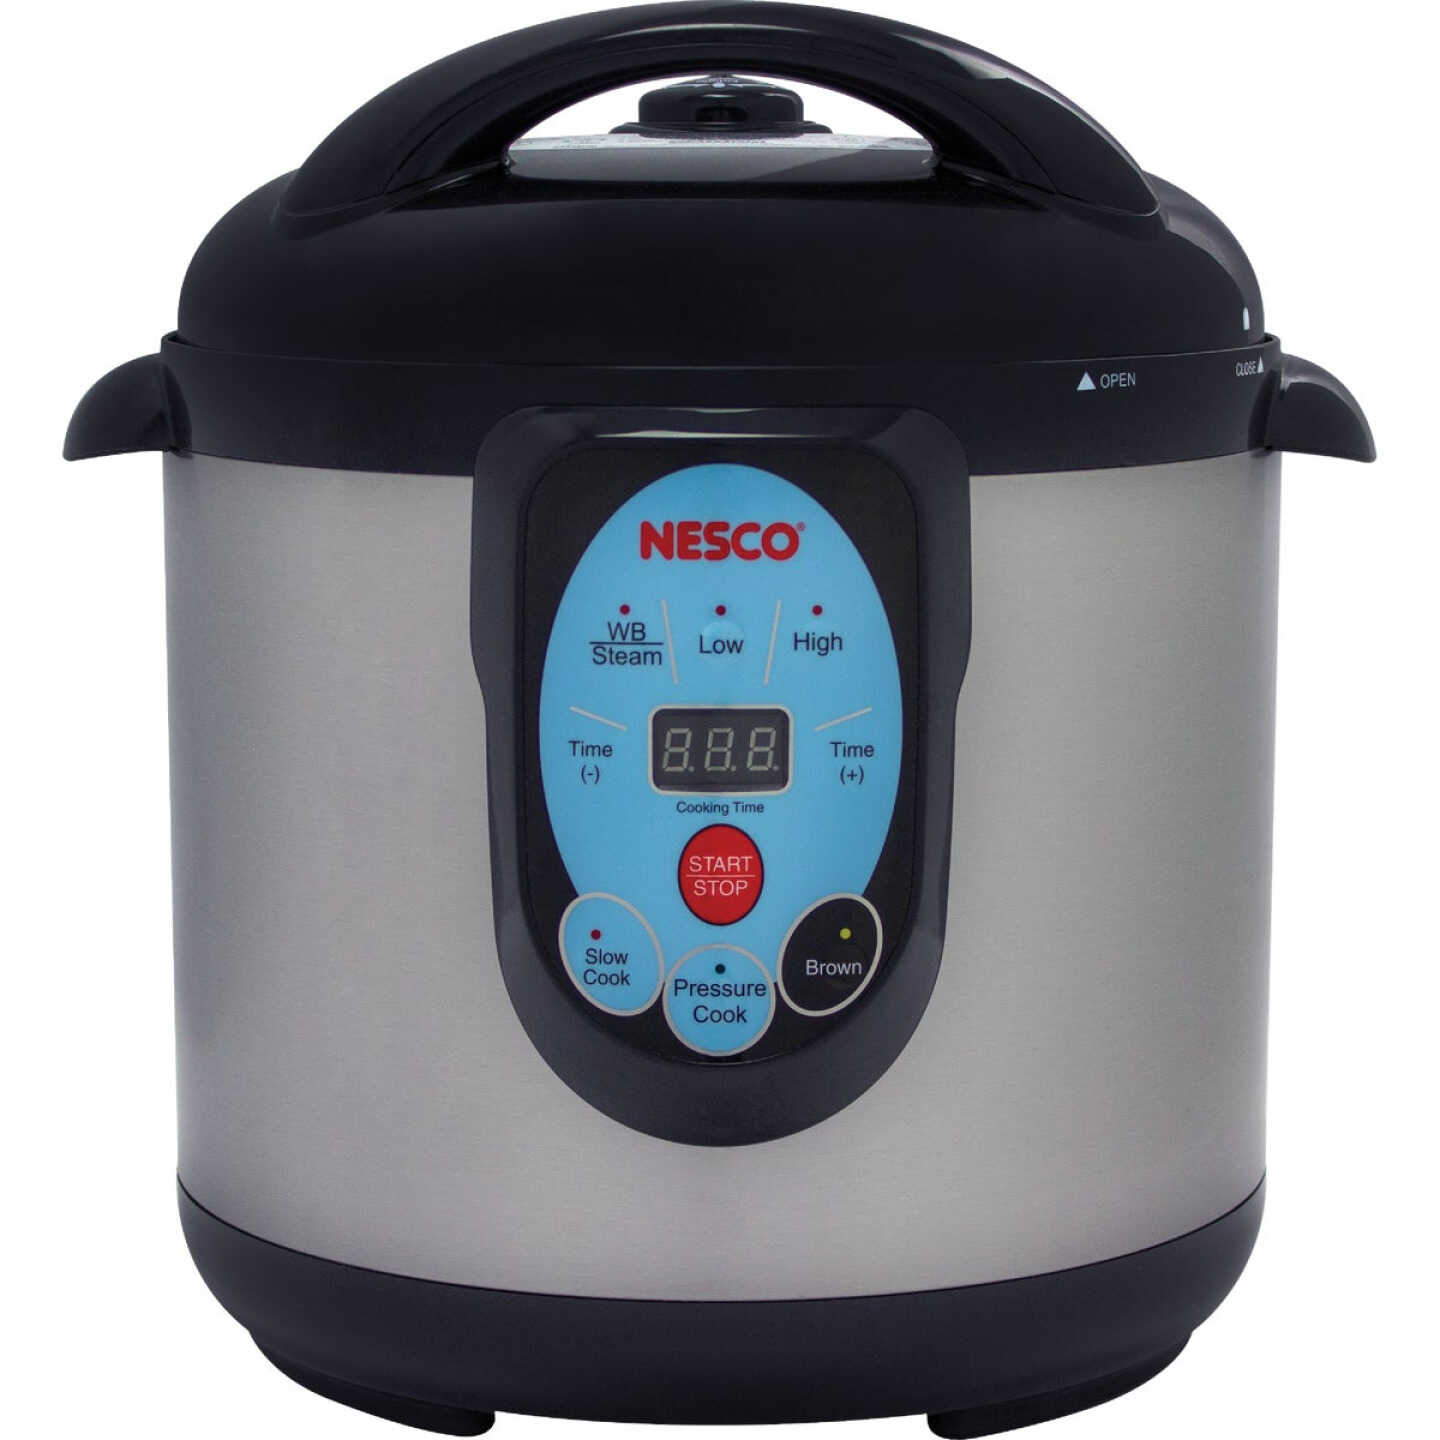 Nesco 4-Quart Slow Cooker | Stainless Steel